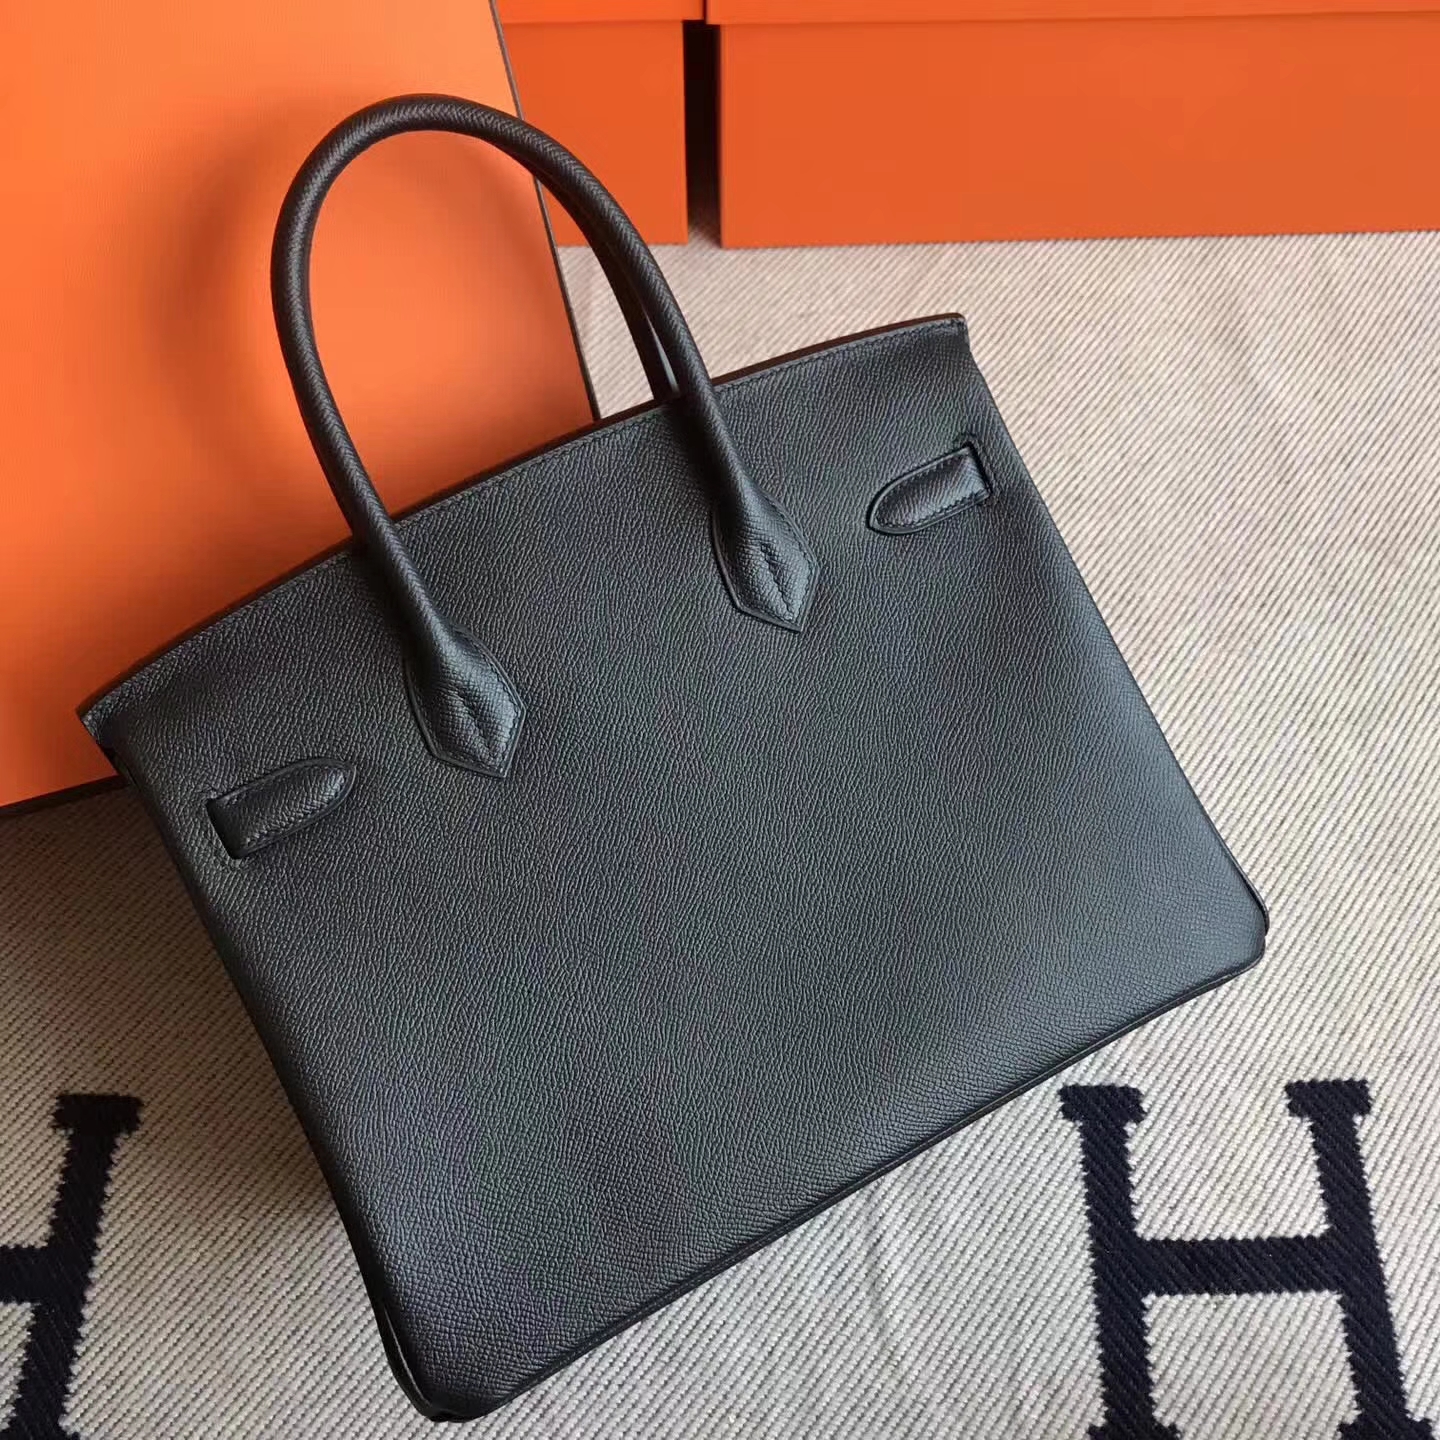 Fashion Hermes CK89 Black Epsom Leather Birkin30cm Tote Bag Gold  Hardware